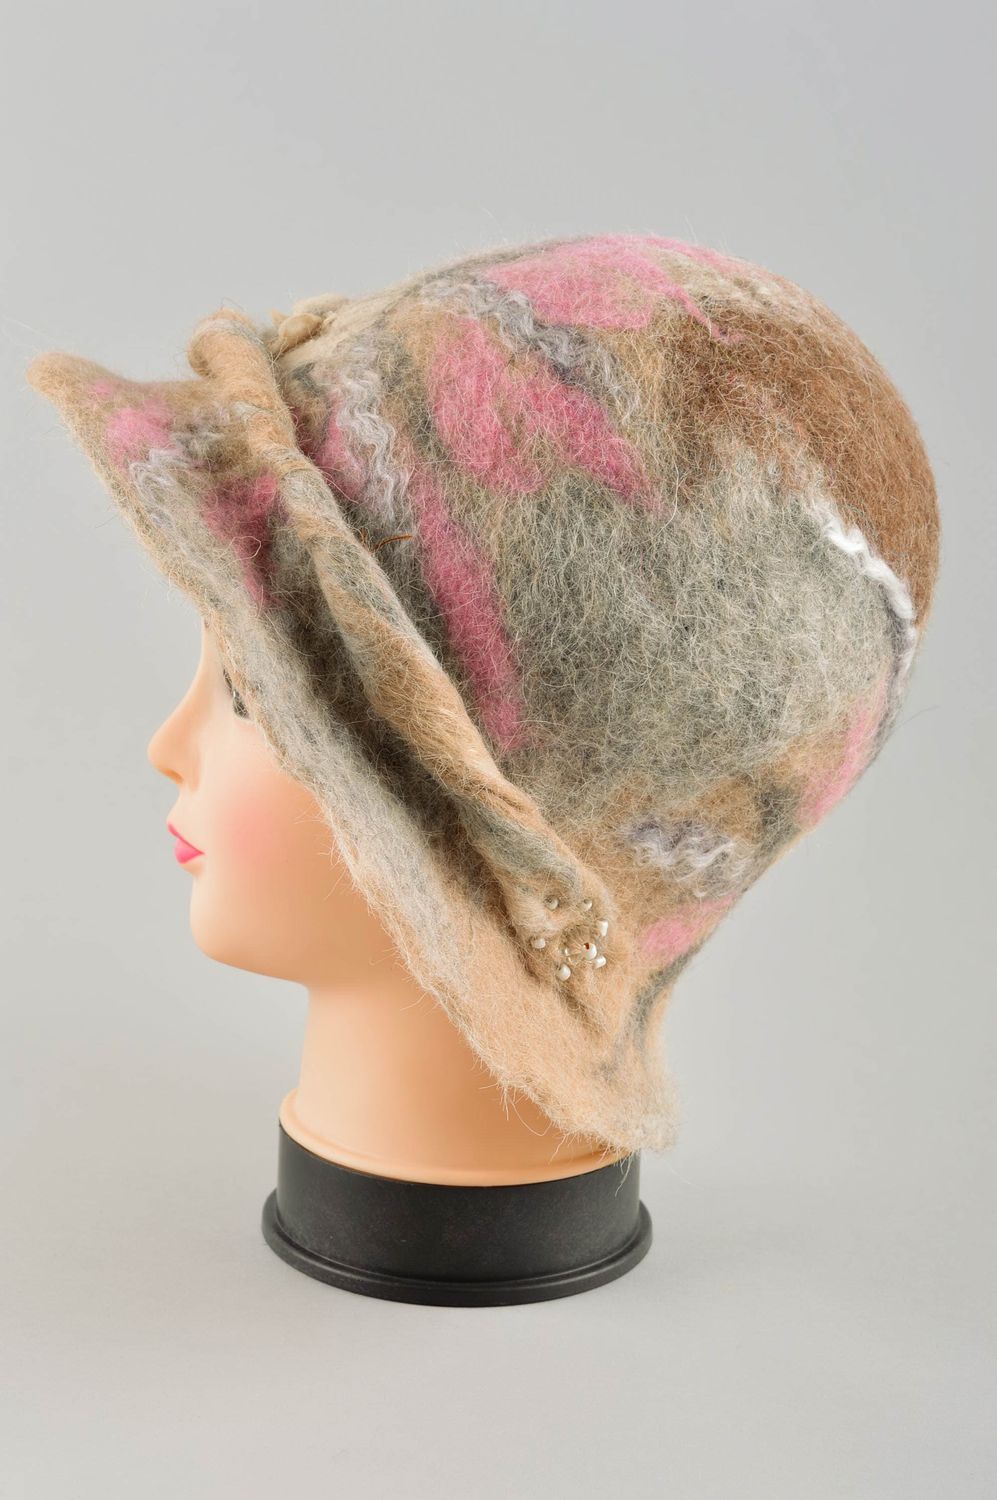 Дамская шляпка ручной работы женский головной убор шляпа с полями модная шляпка фото 3